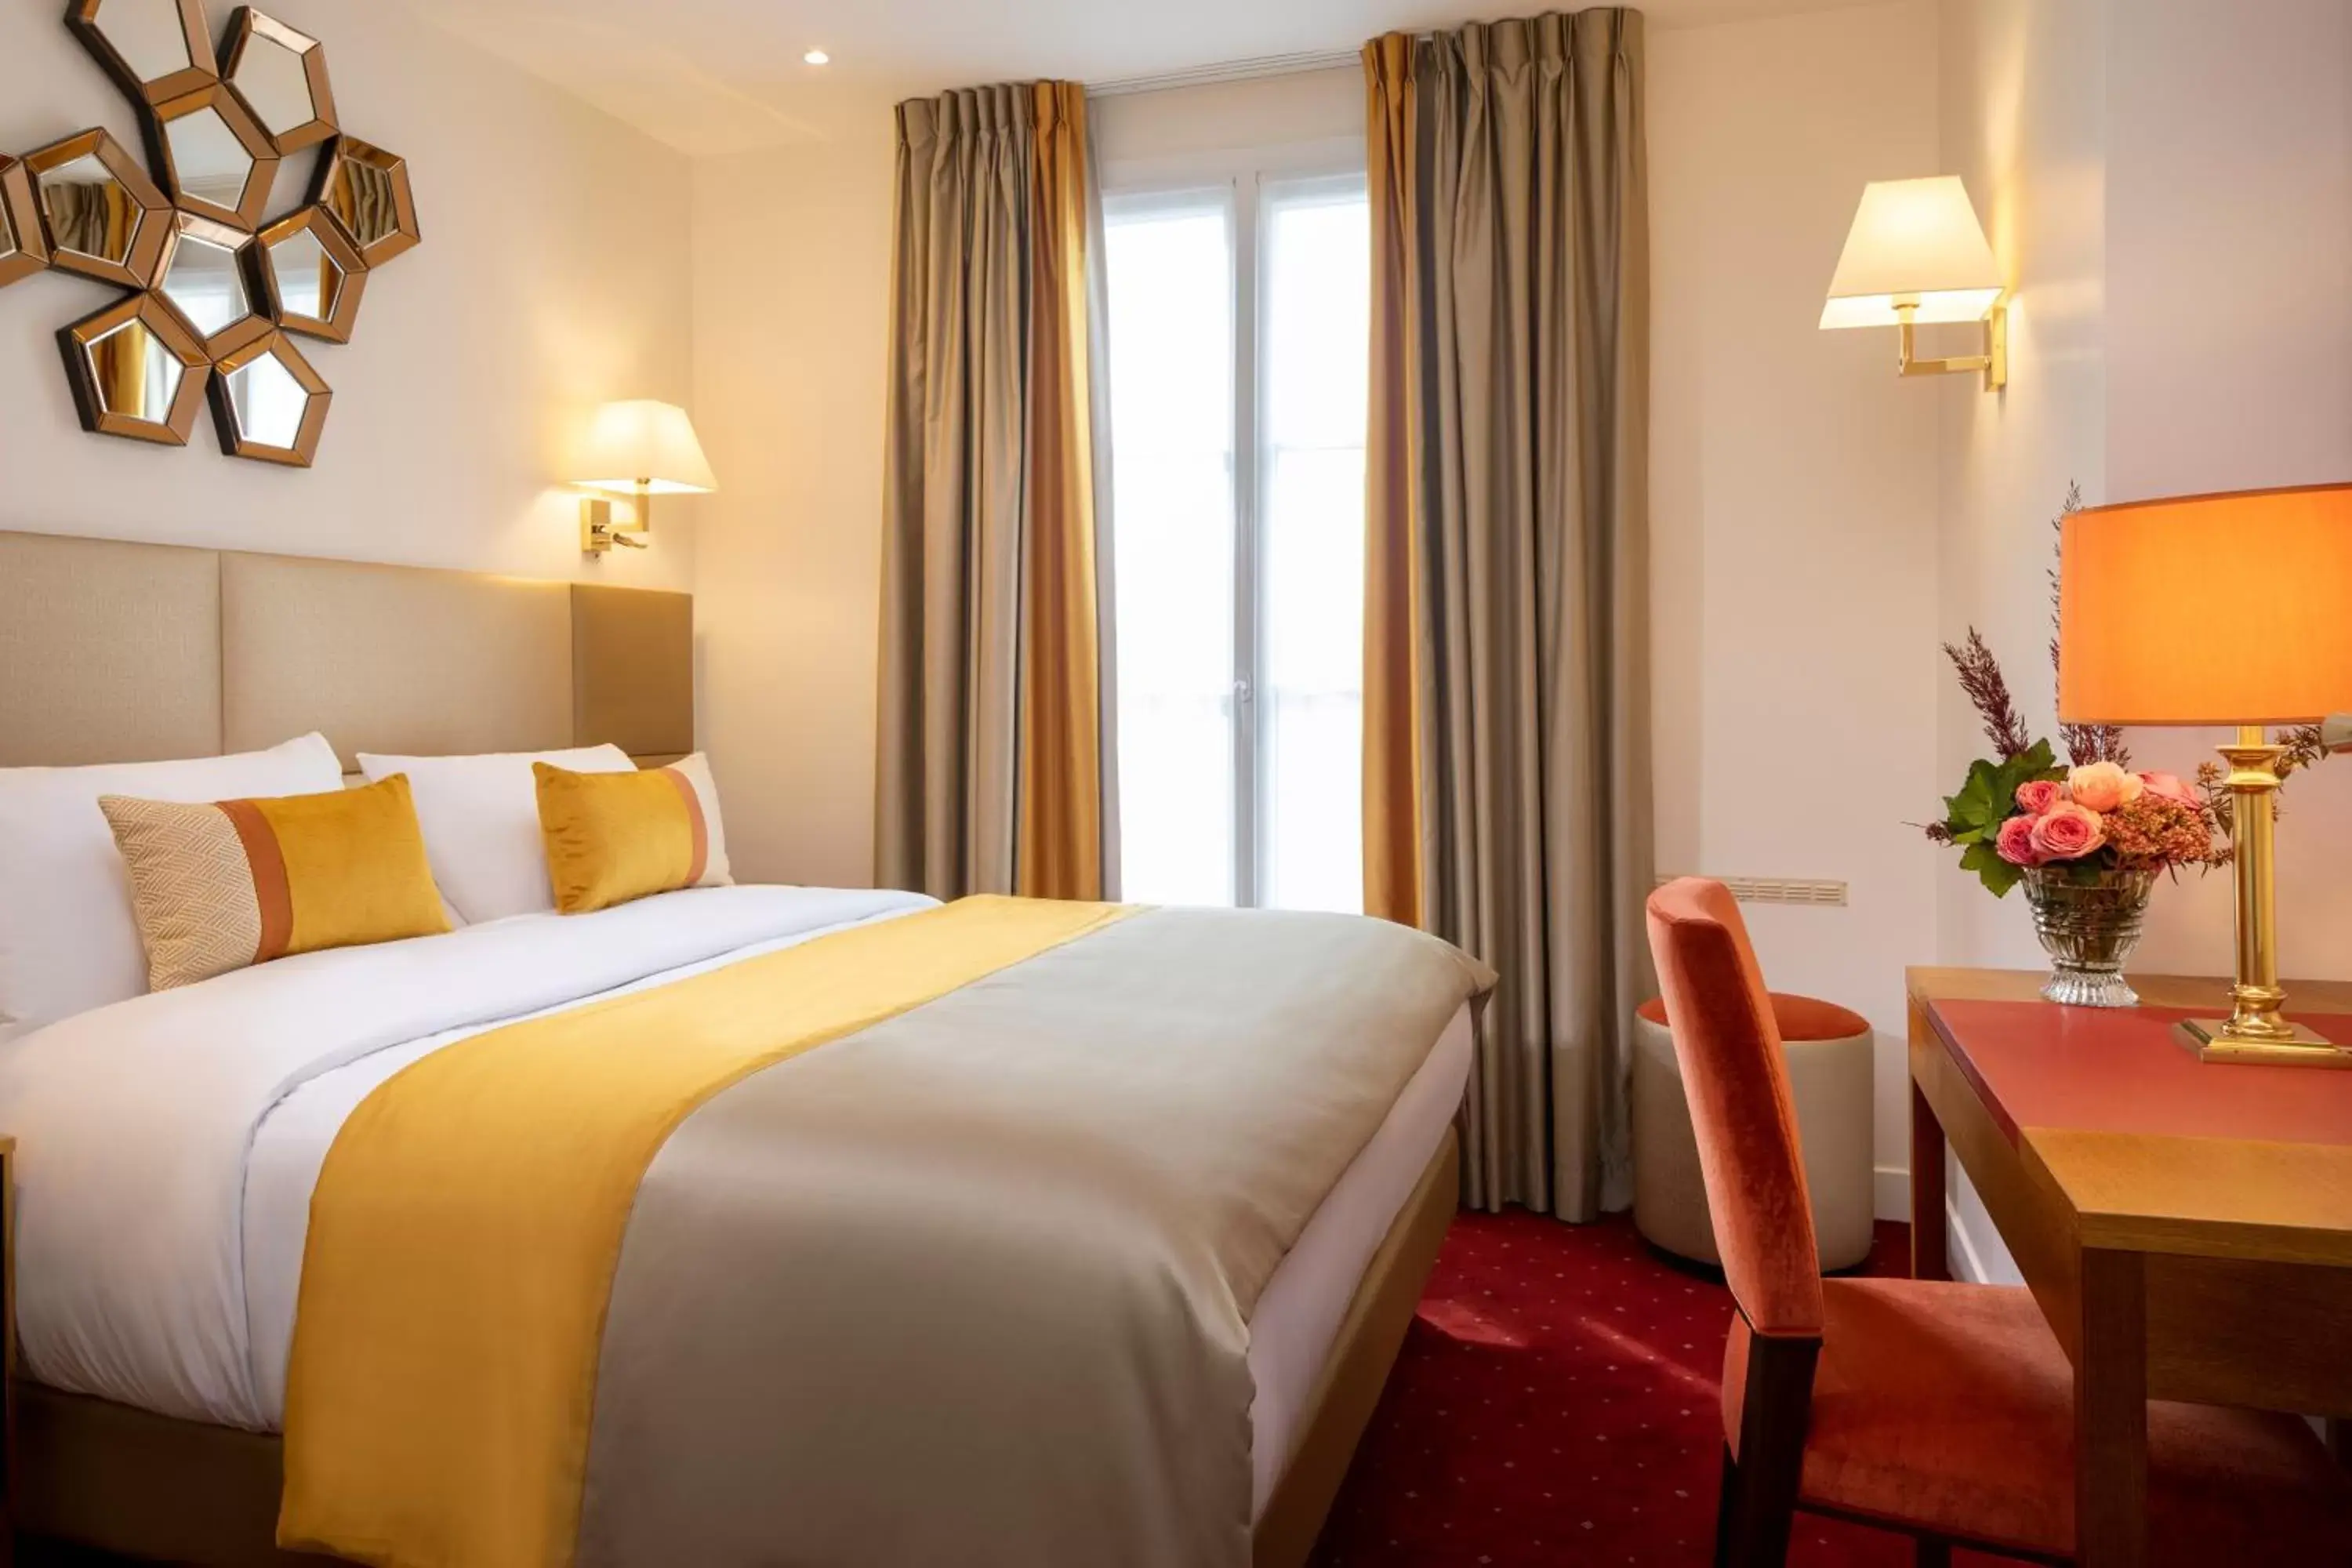 Bed in Hotel De Suede Saint Germain